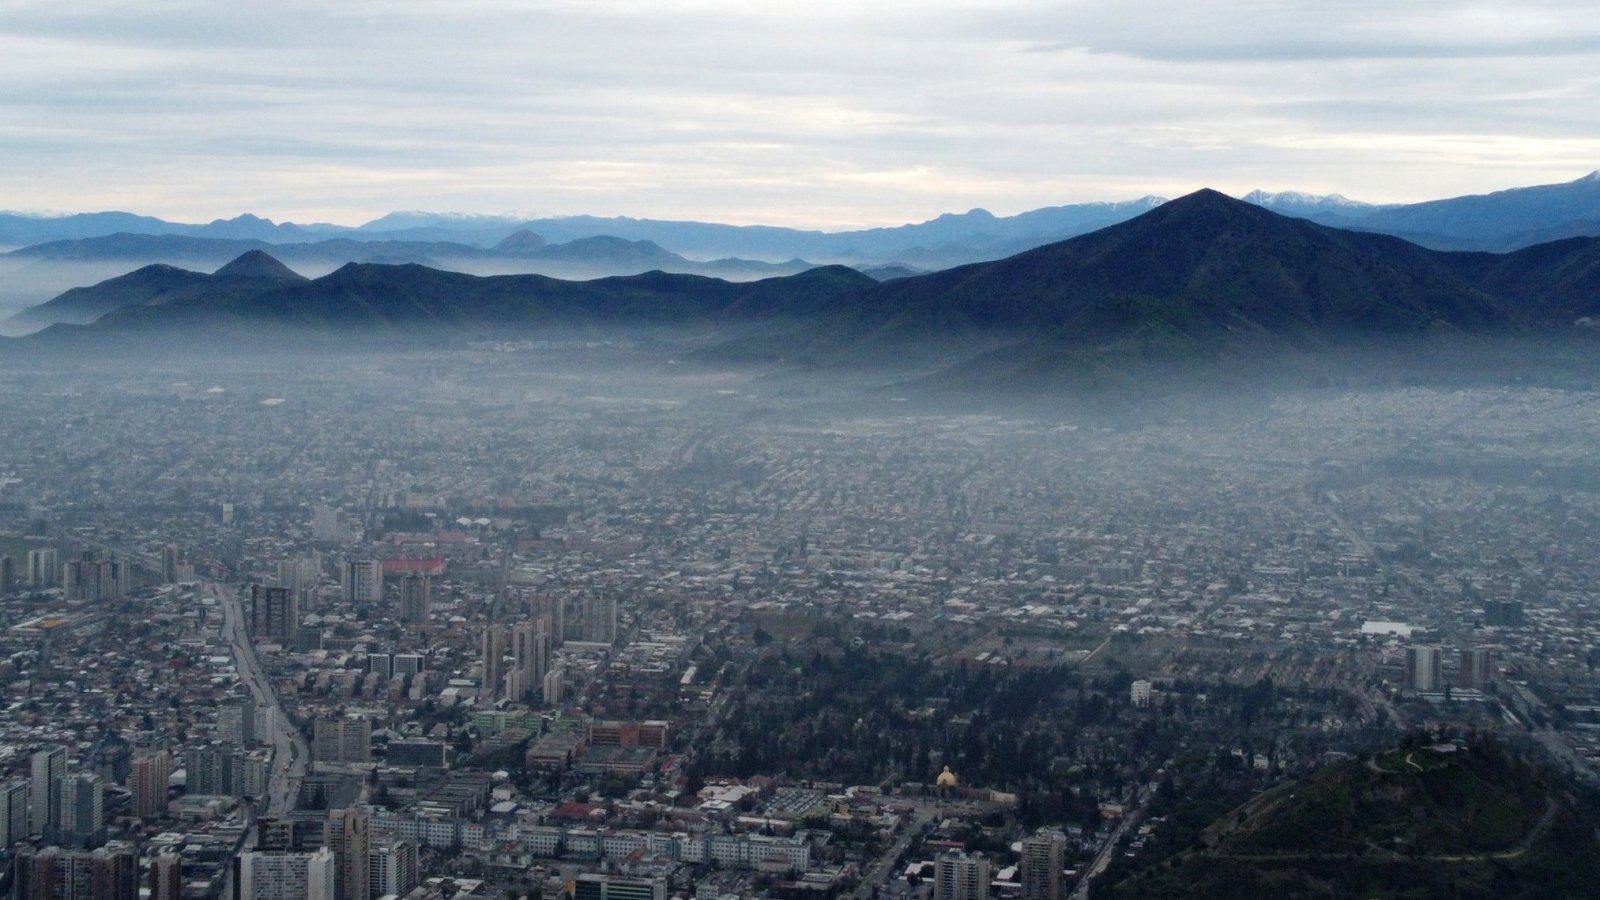 Cordillera de los Andes vista desde Santiago. Se aprecia contaminación y smog.